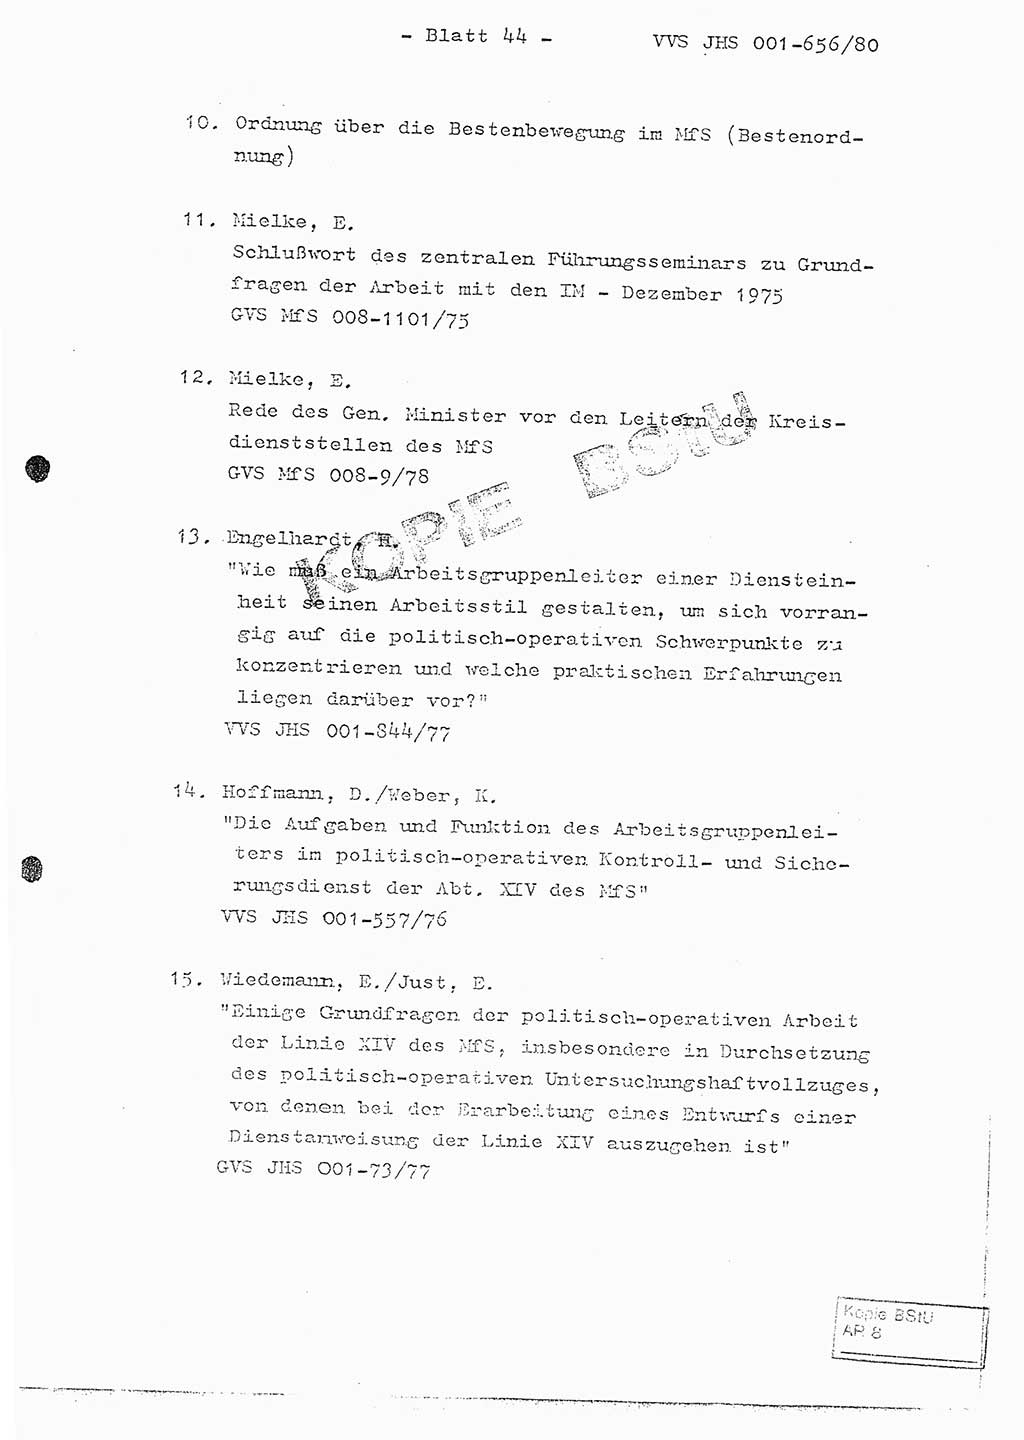 Fachschulabschlußarbeit Unterleutnant Christian Kätzel (Abt. ⅩⅣ), Ministerium für Staatssicherheit (MfS) [Deutsche Demokratische Republik (DDR)], Juristische Hochschule (JHS), Vertrauliche Verschlußsache (VVS) 001-656/80, Potsdam 1980, Blatt 44 (FS-Abschl.-Arb. MfS DDR JHS VVS 001-656/80 1980, Bl. 44)